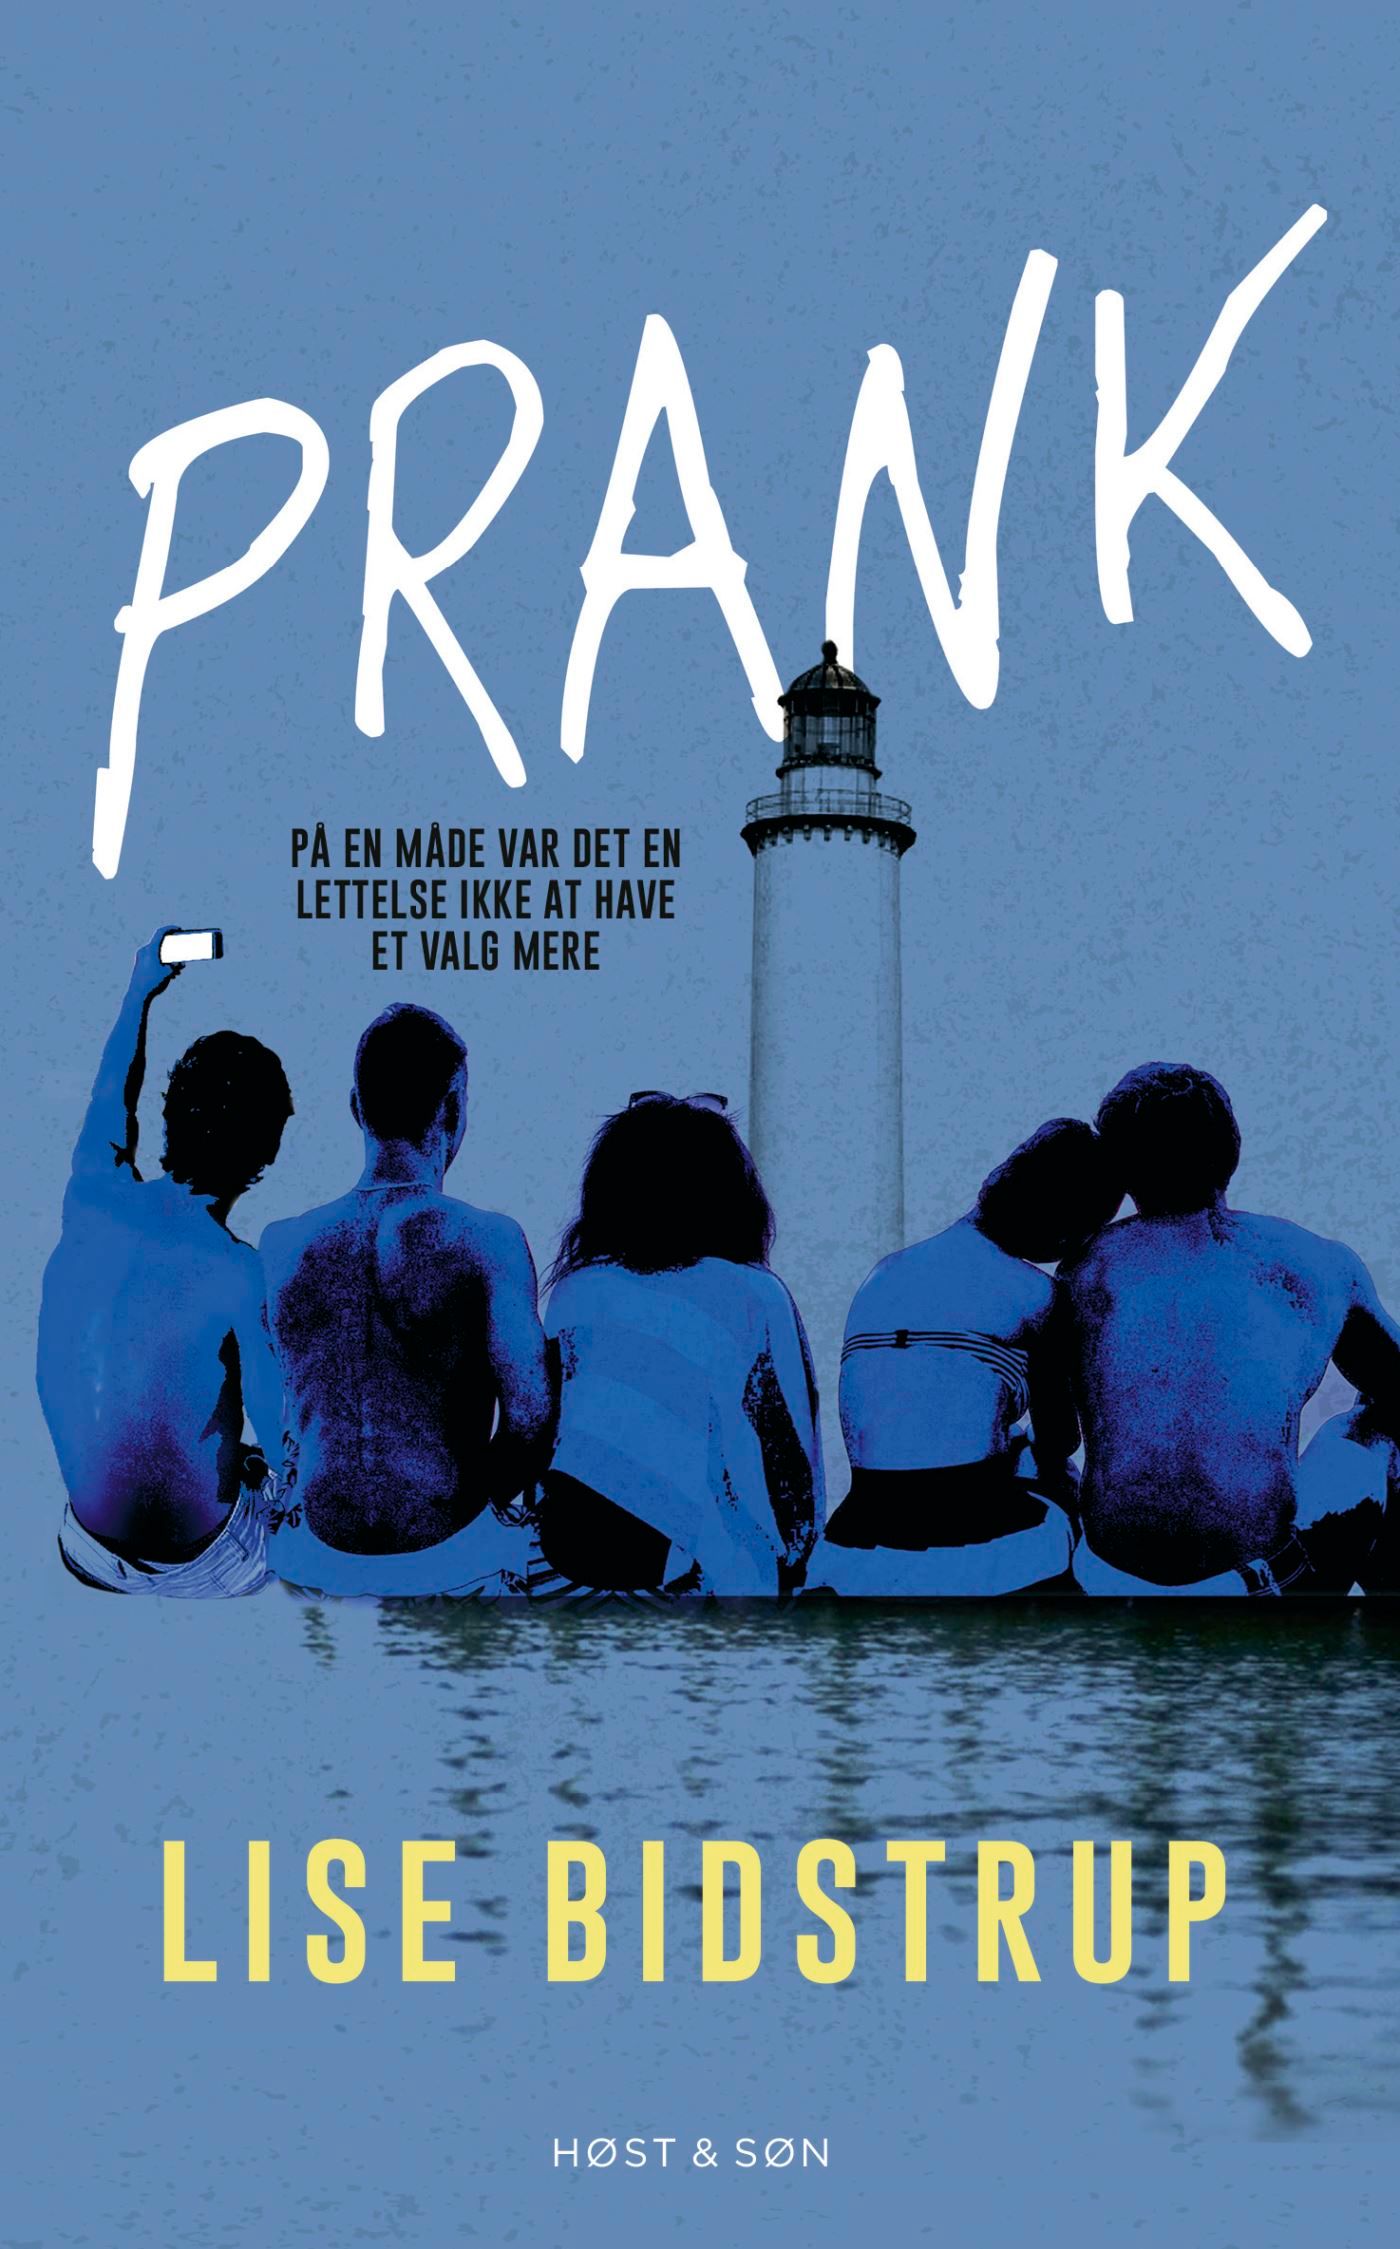 Prank, audiobook by Lise Bidstrup